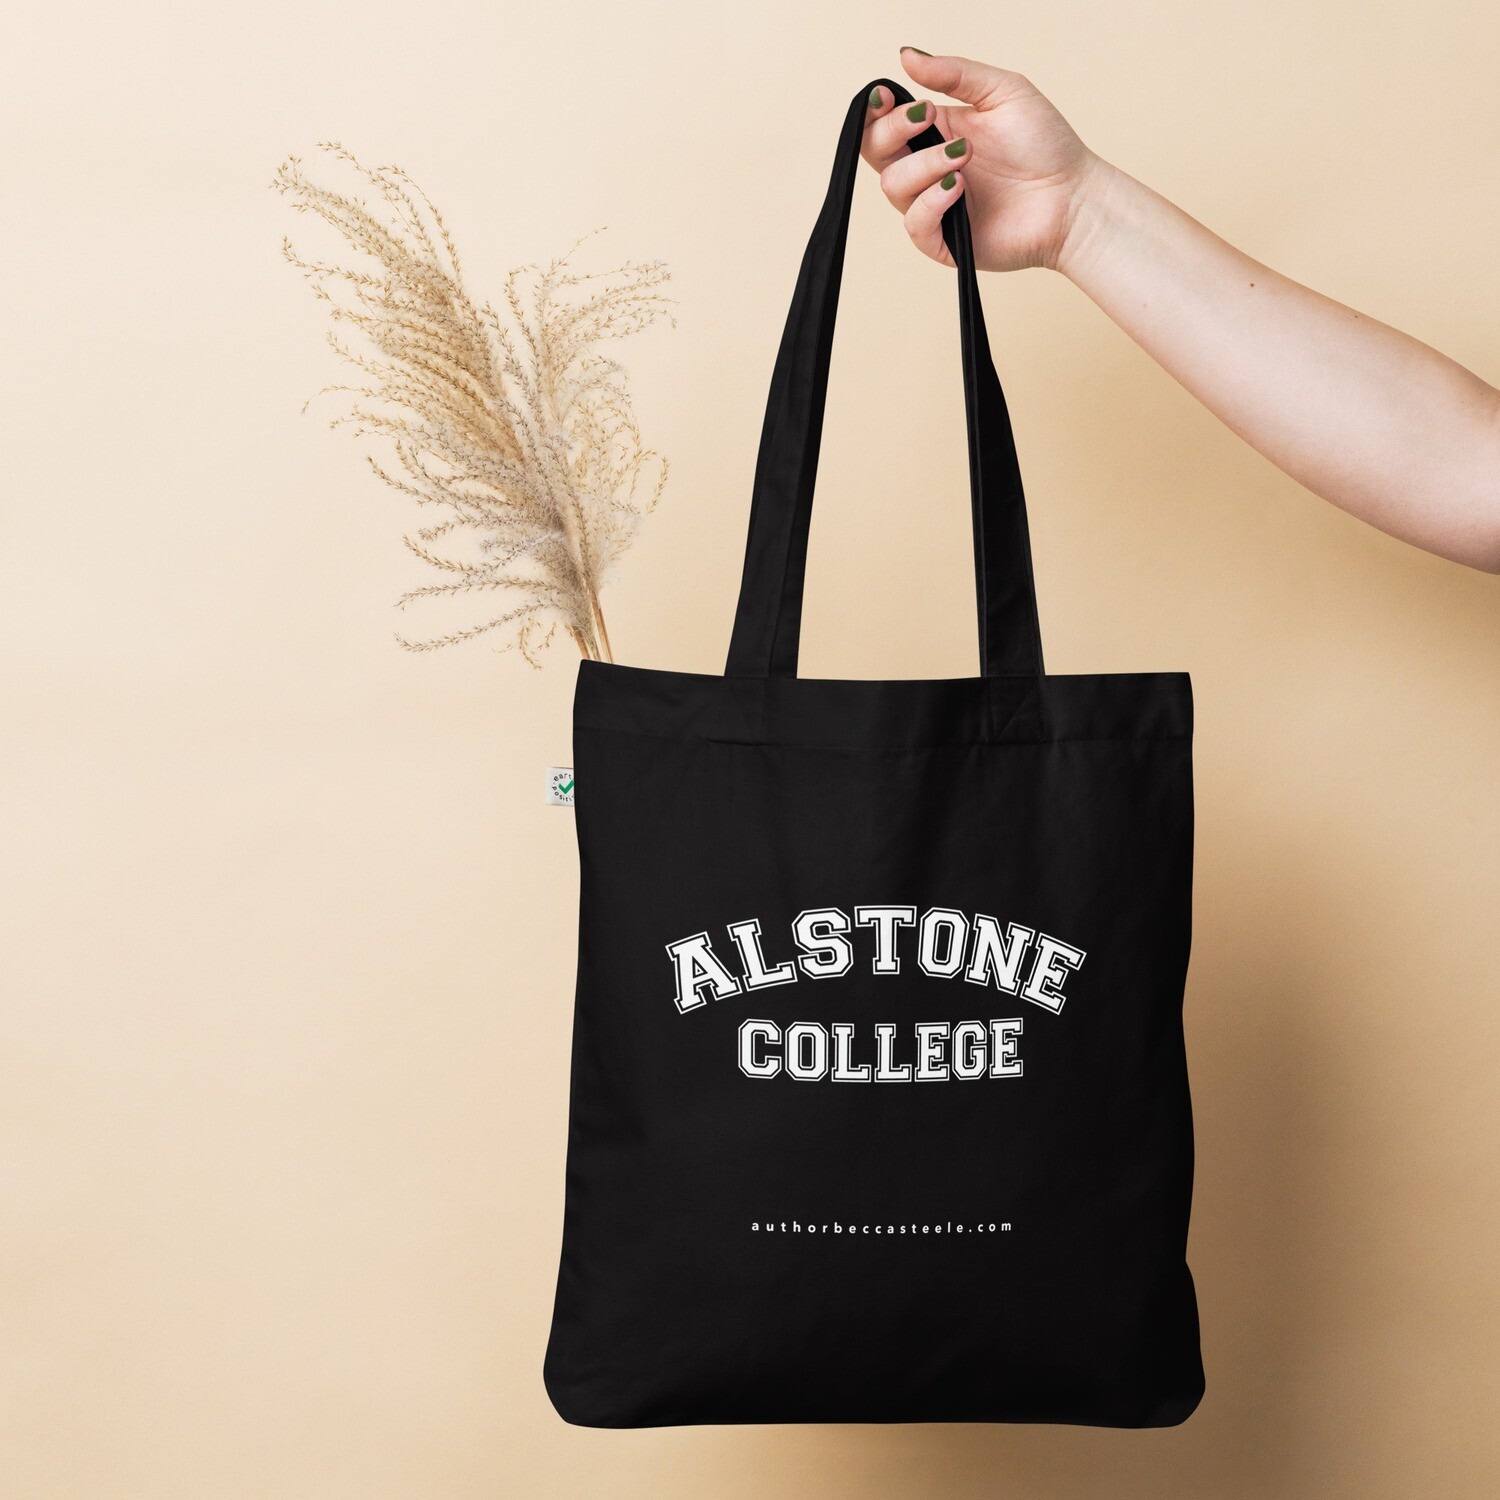 Alstone College organic tote bag